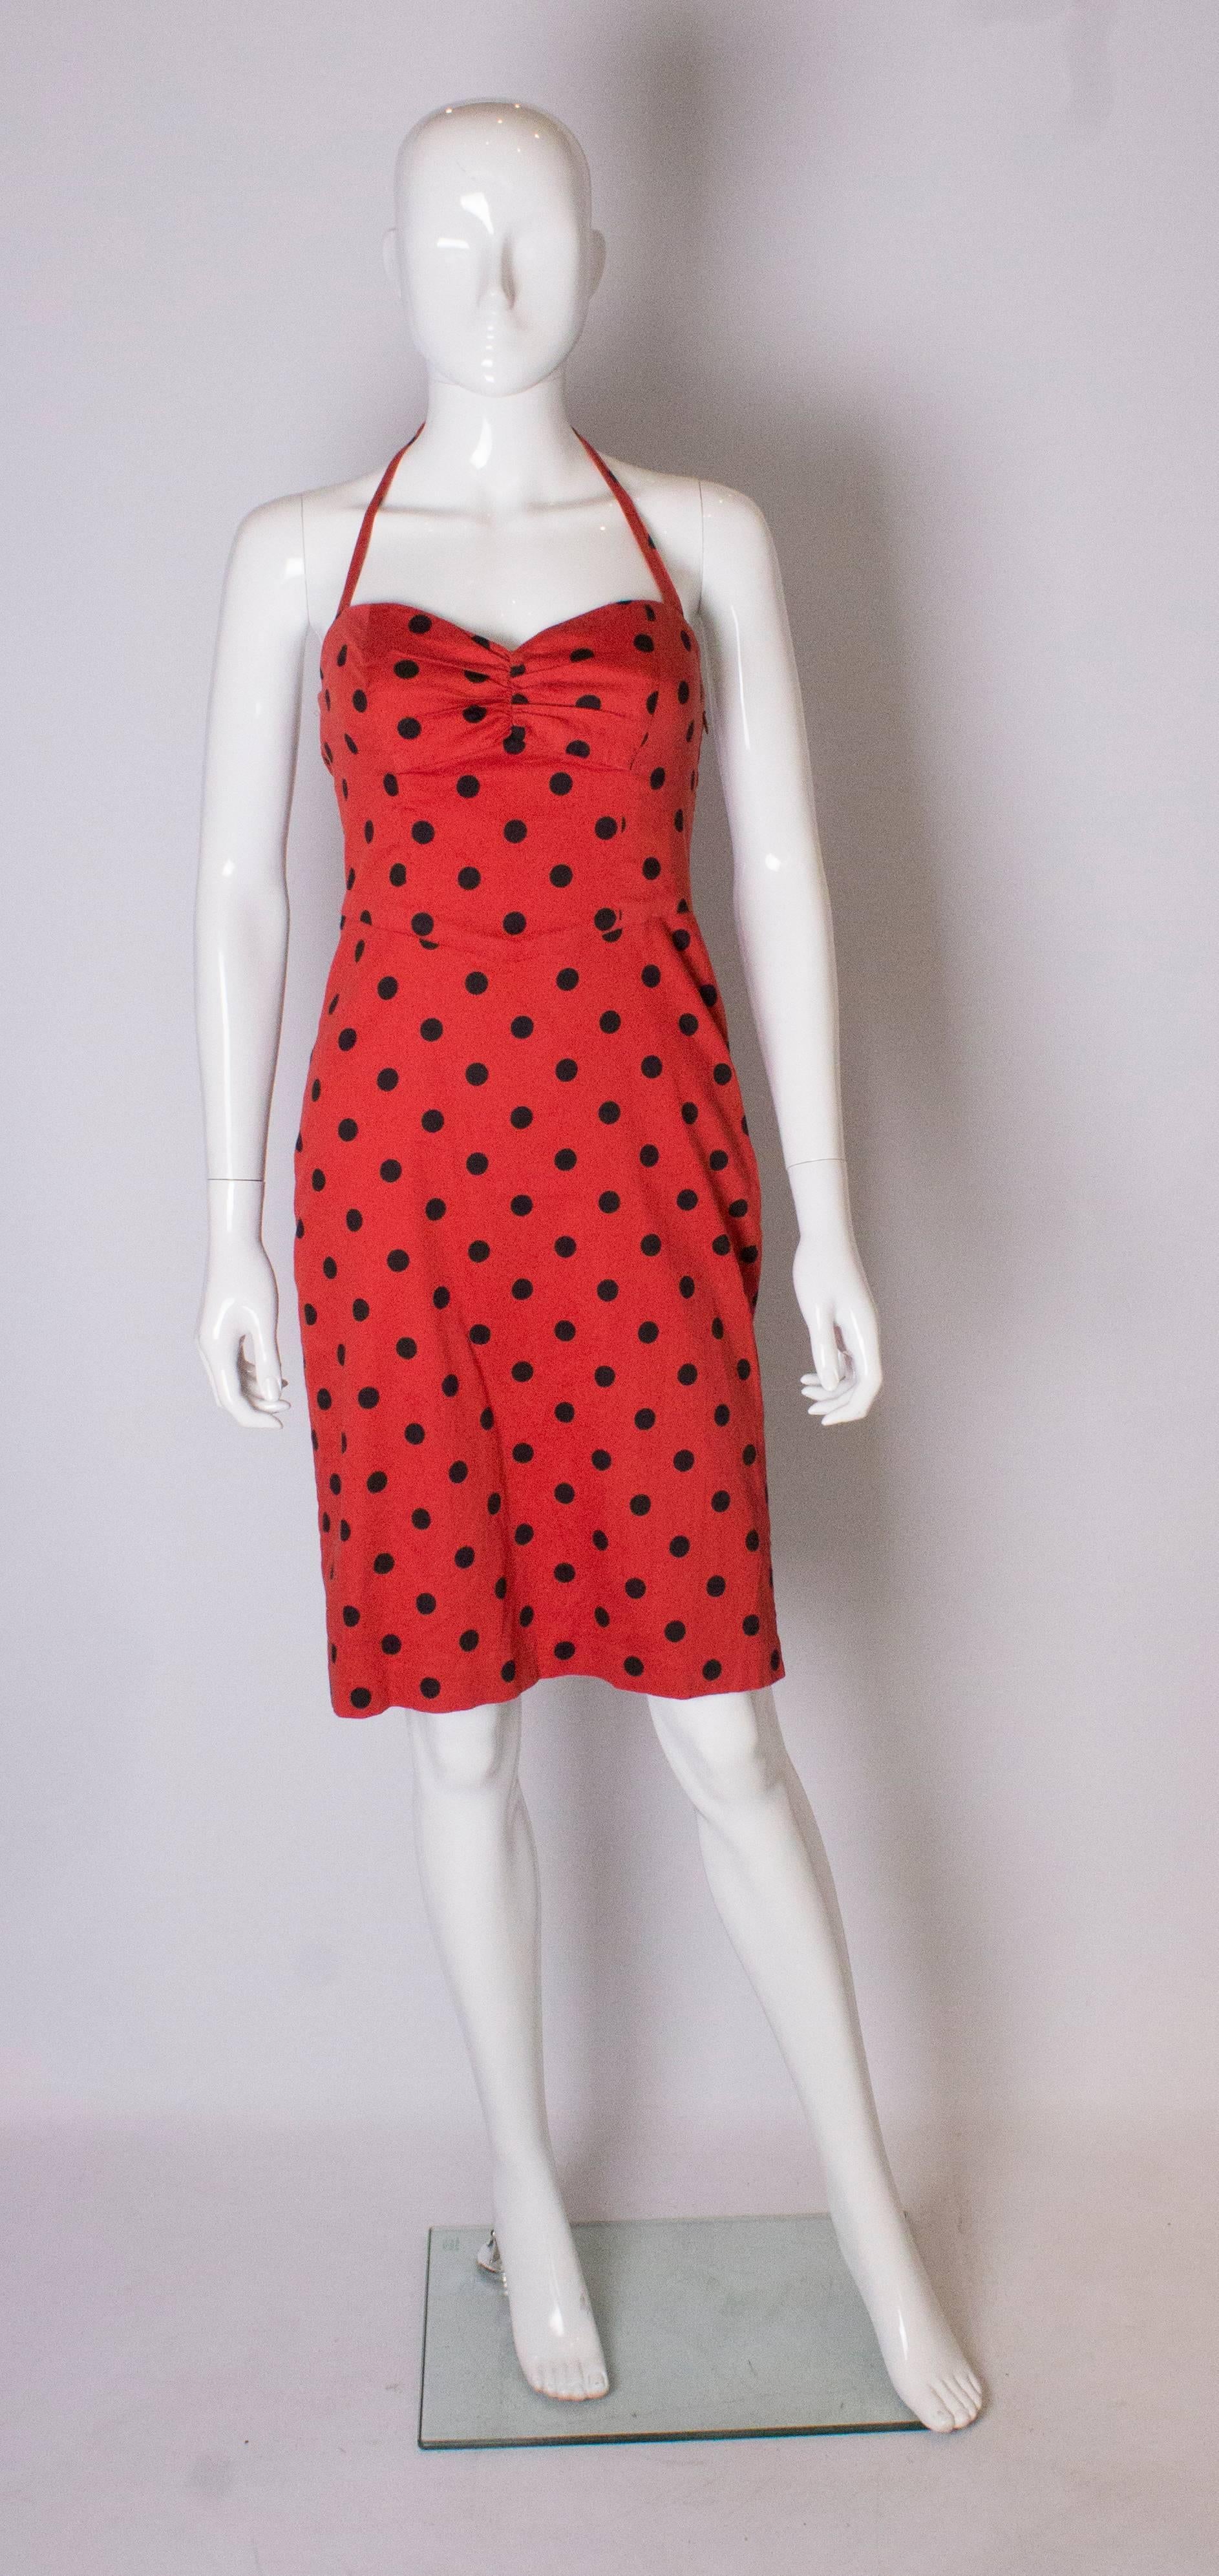 Eine große  vintage-Sommerpartykleid von Betsey Johnson.  Das Kleid aus roter Baumwolle mit schwarzen Tupfen  hat einen Neckholder-Ausschnitt mit elastischem Rücken und Raffung an der Büste.